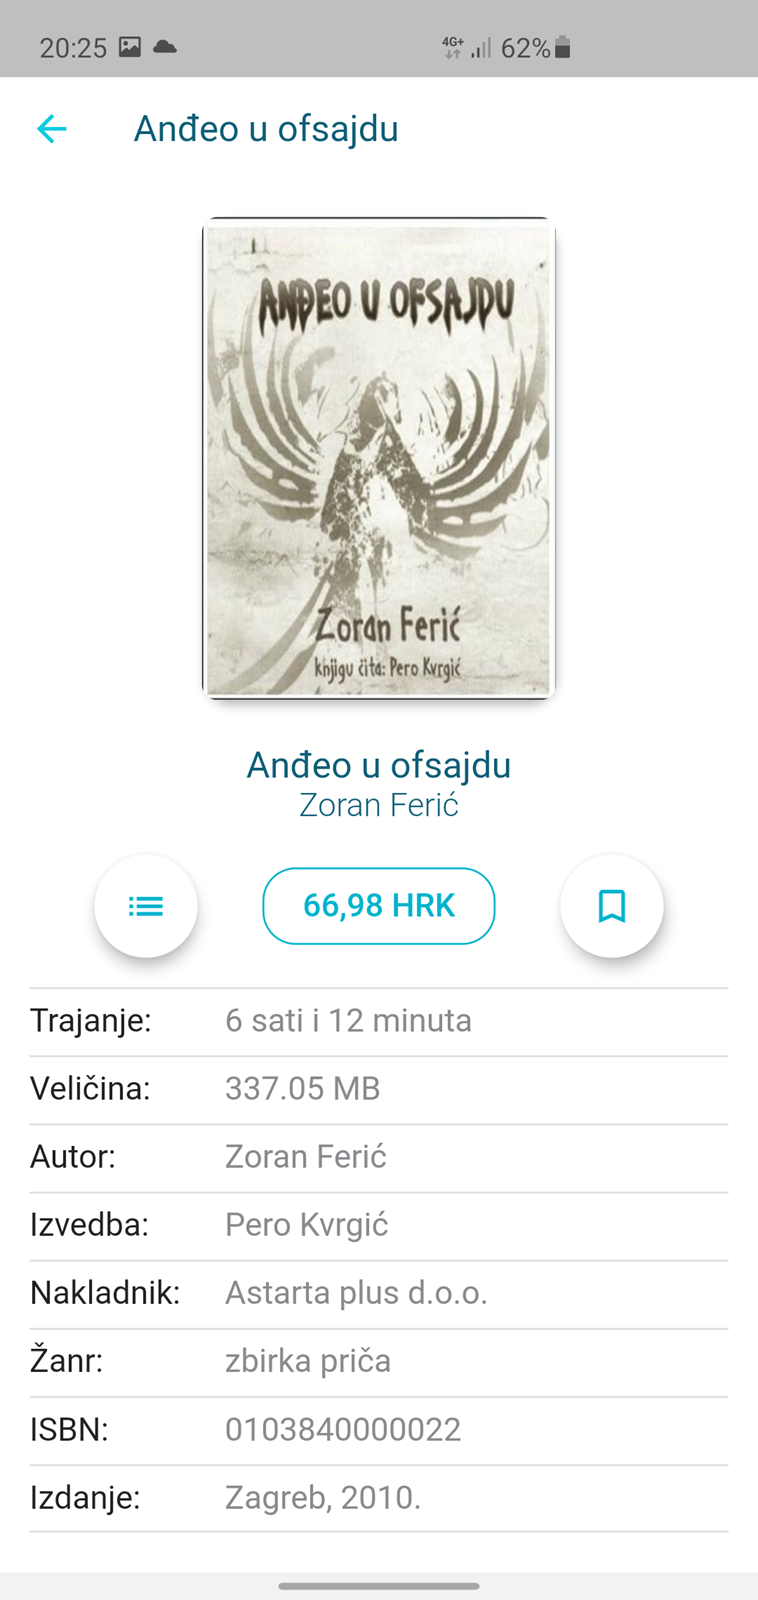 Book&Zvook - prva aplikacija za slušanje knjiga na hrvatskom jeziku - APP  DANA @ Bug.hr